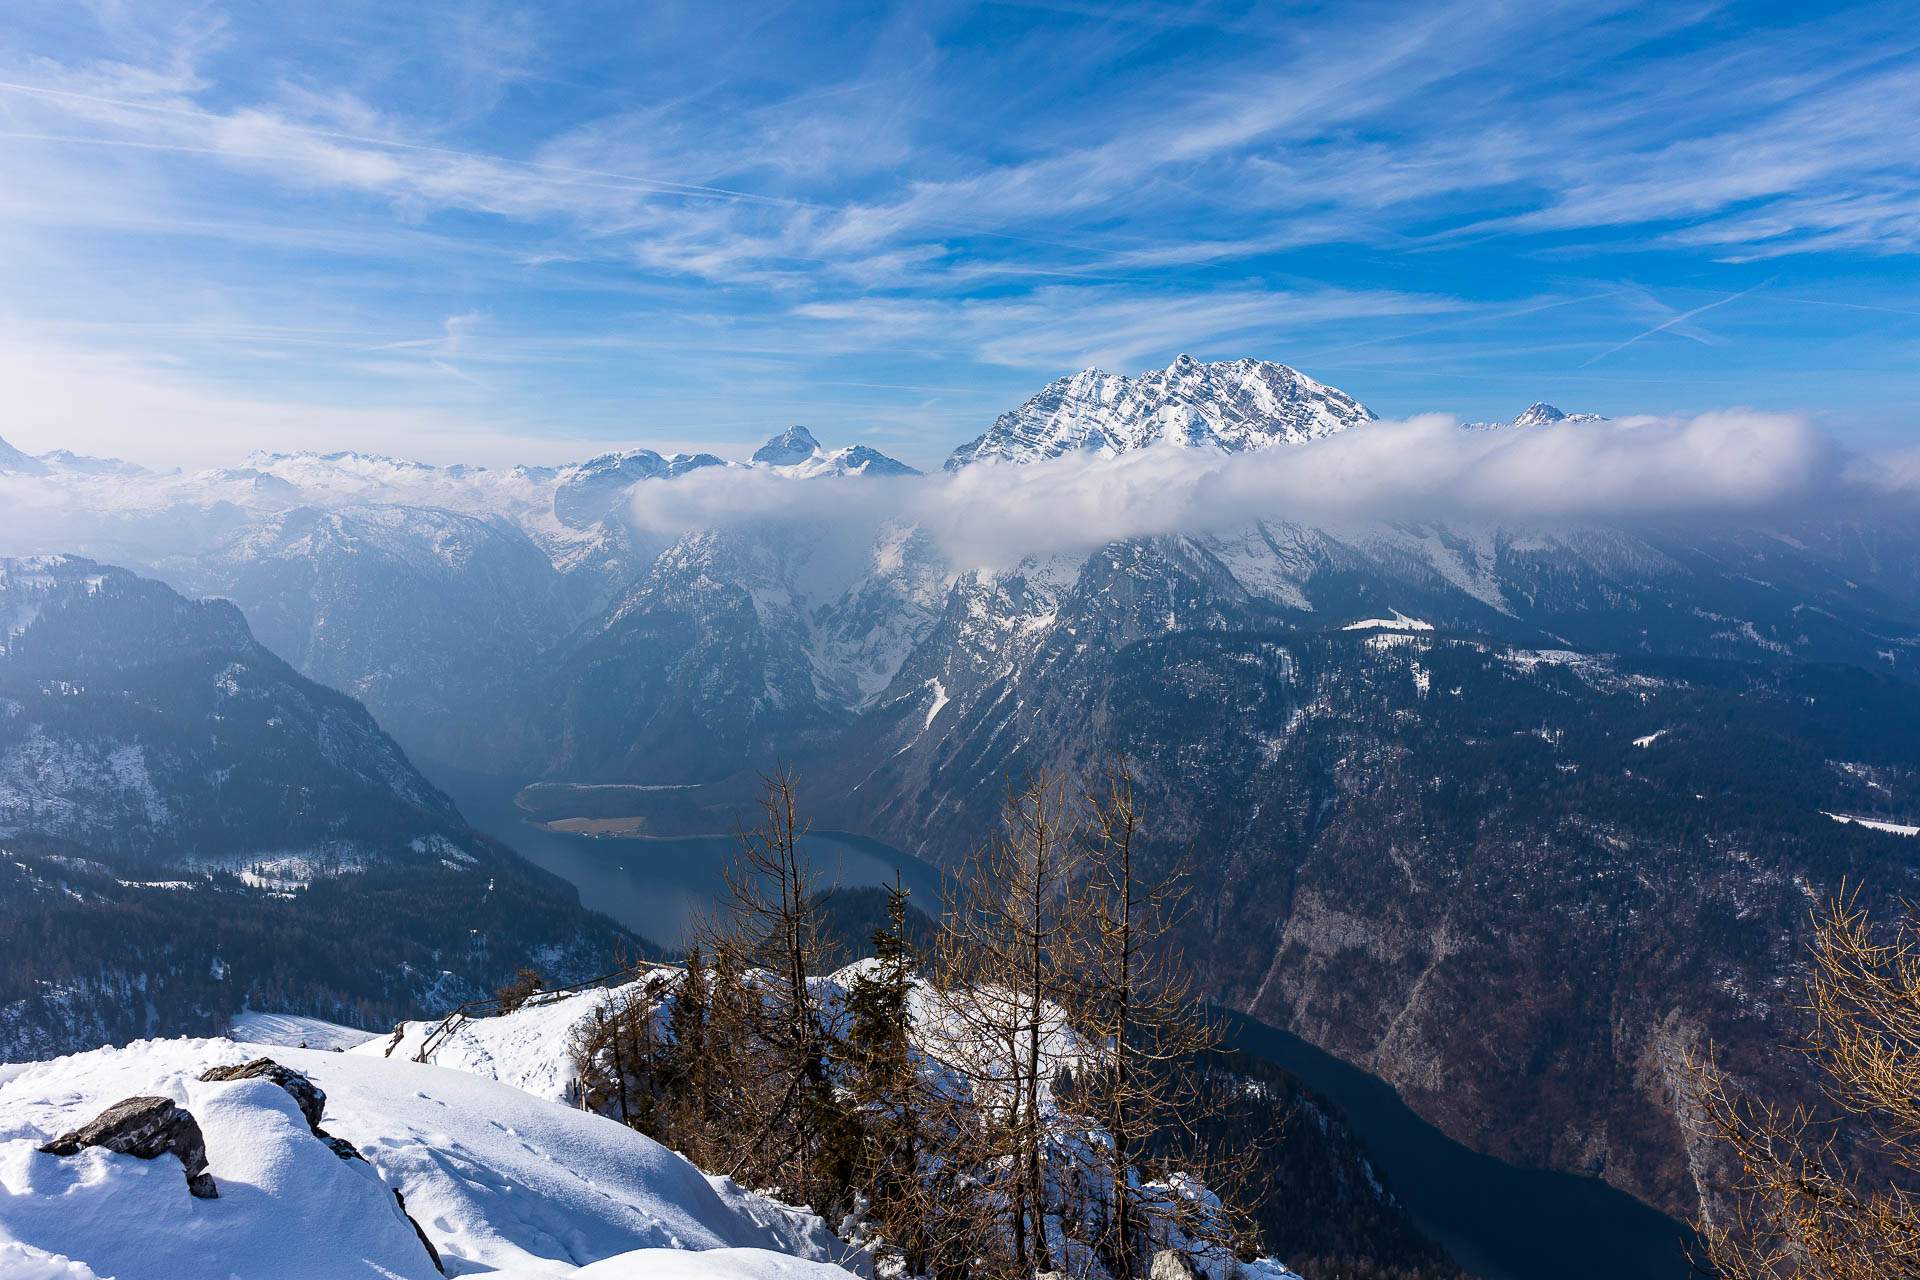 Blick vom Jenner über den Königssee auf den schneebedeckten Watzmann - Fotoreise Berchtesgadener Land - Winter